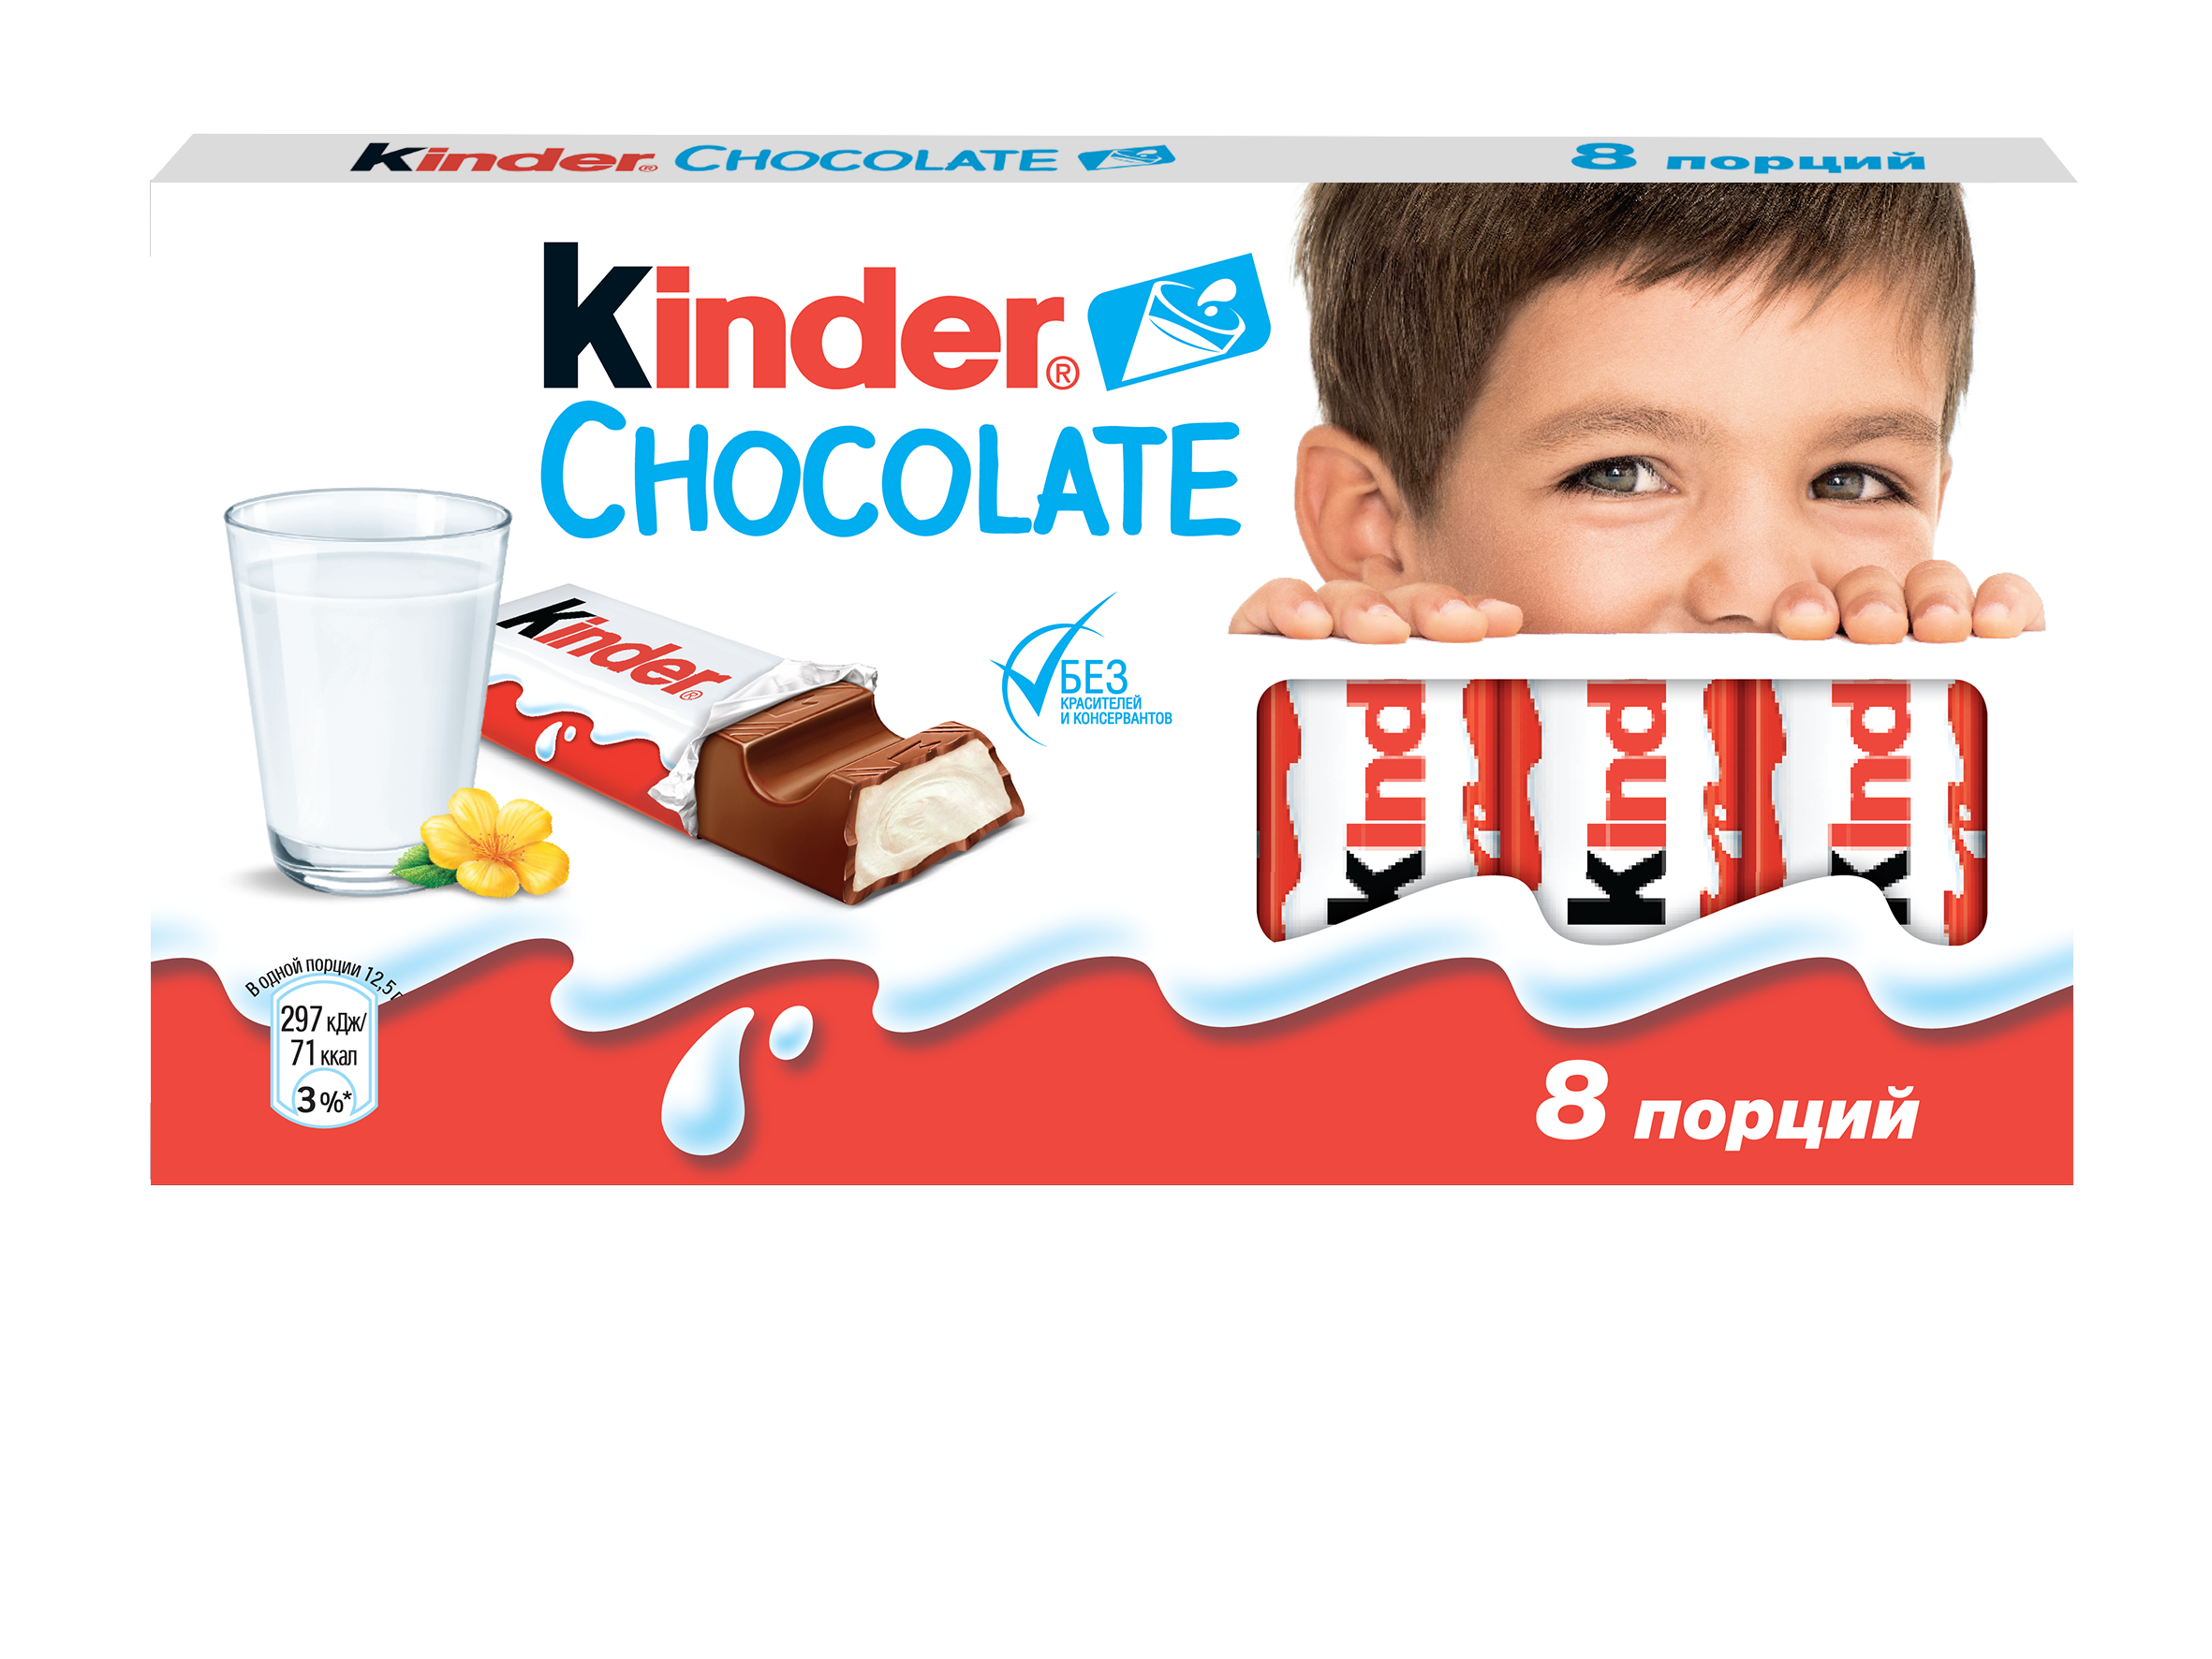 Начинка киндер шоколада. Киндер шоколад. Kinder шоколад. Киндер шоколад упаковка. Детский шоколад Киндер.